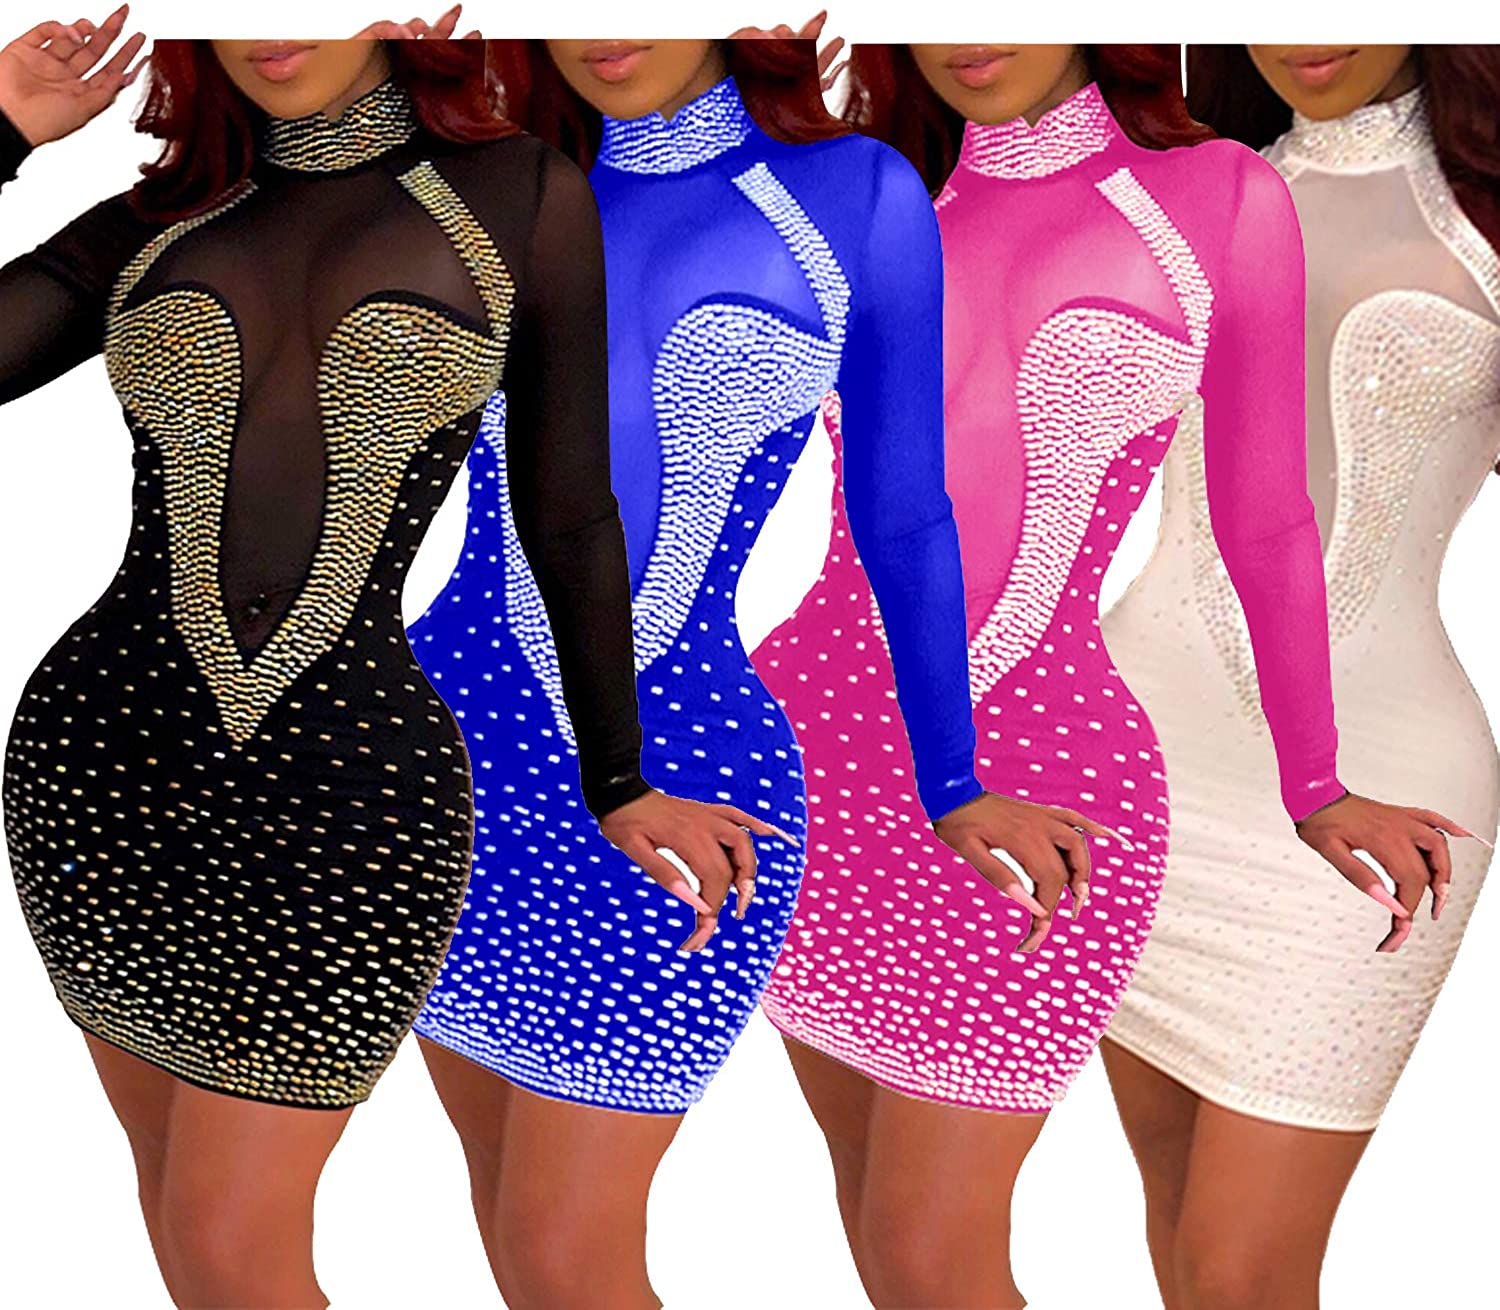 Zipper closure Sexy Hot Club Dresses